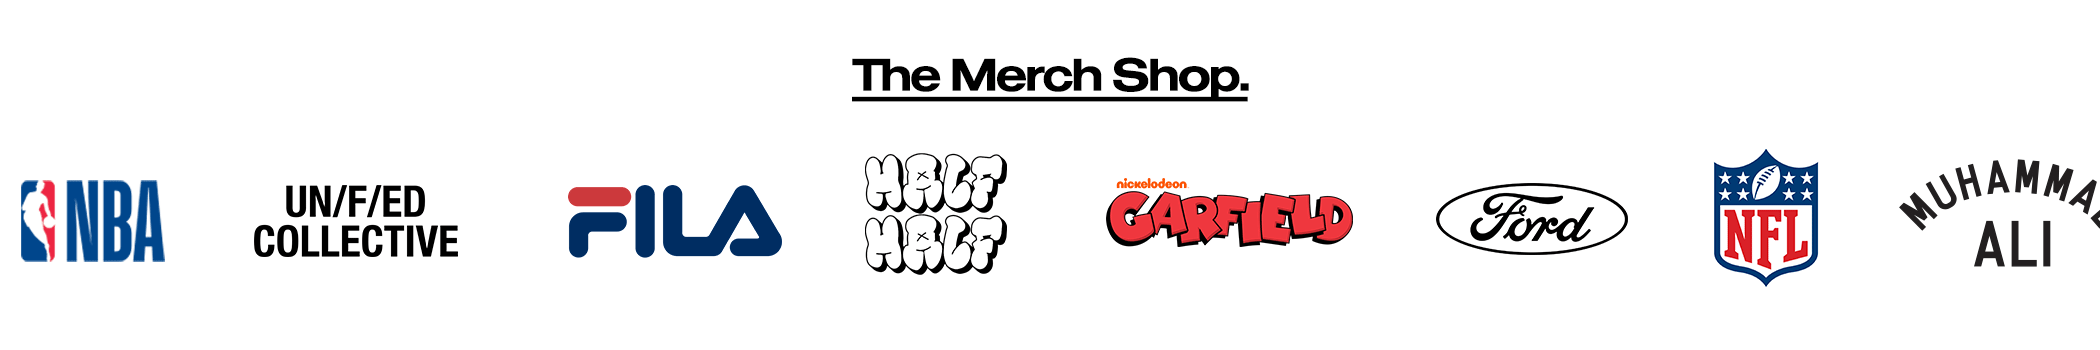 3Shop the merch shop